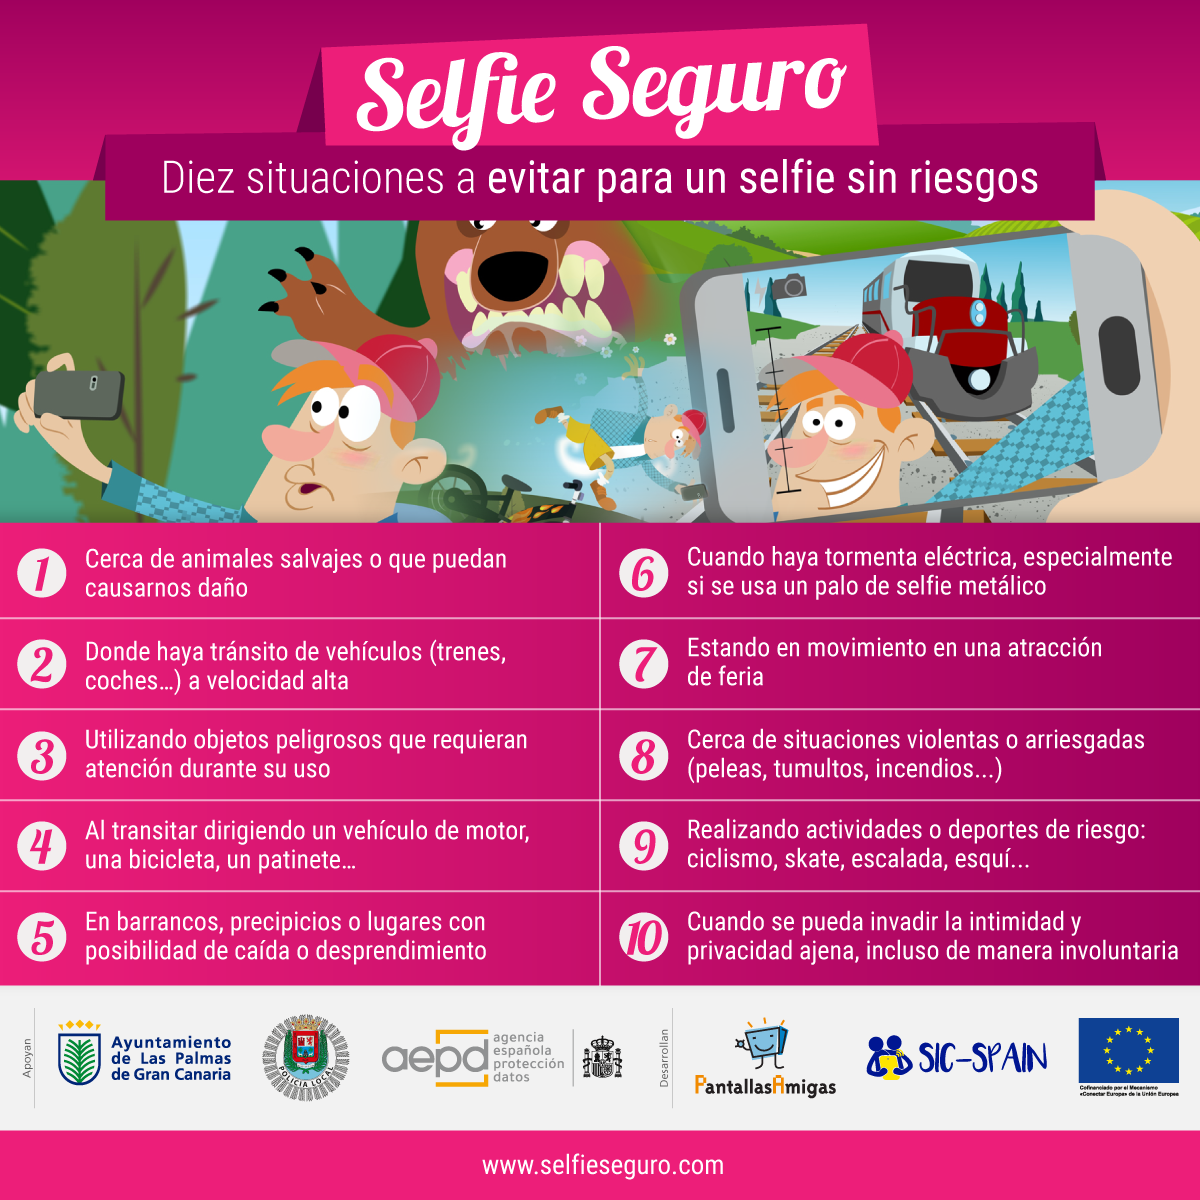 10 Situaciones a evitar para un selfie sin riesgos